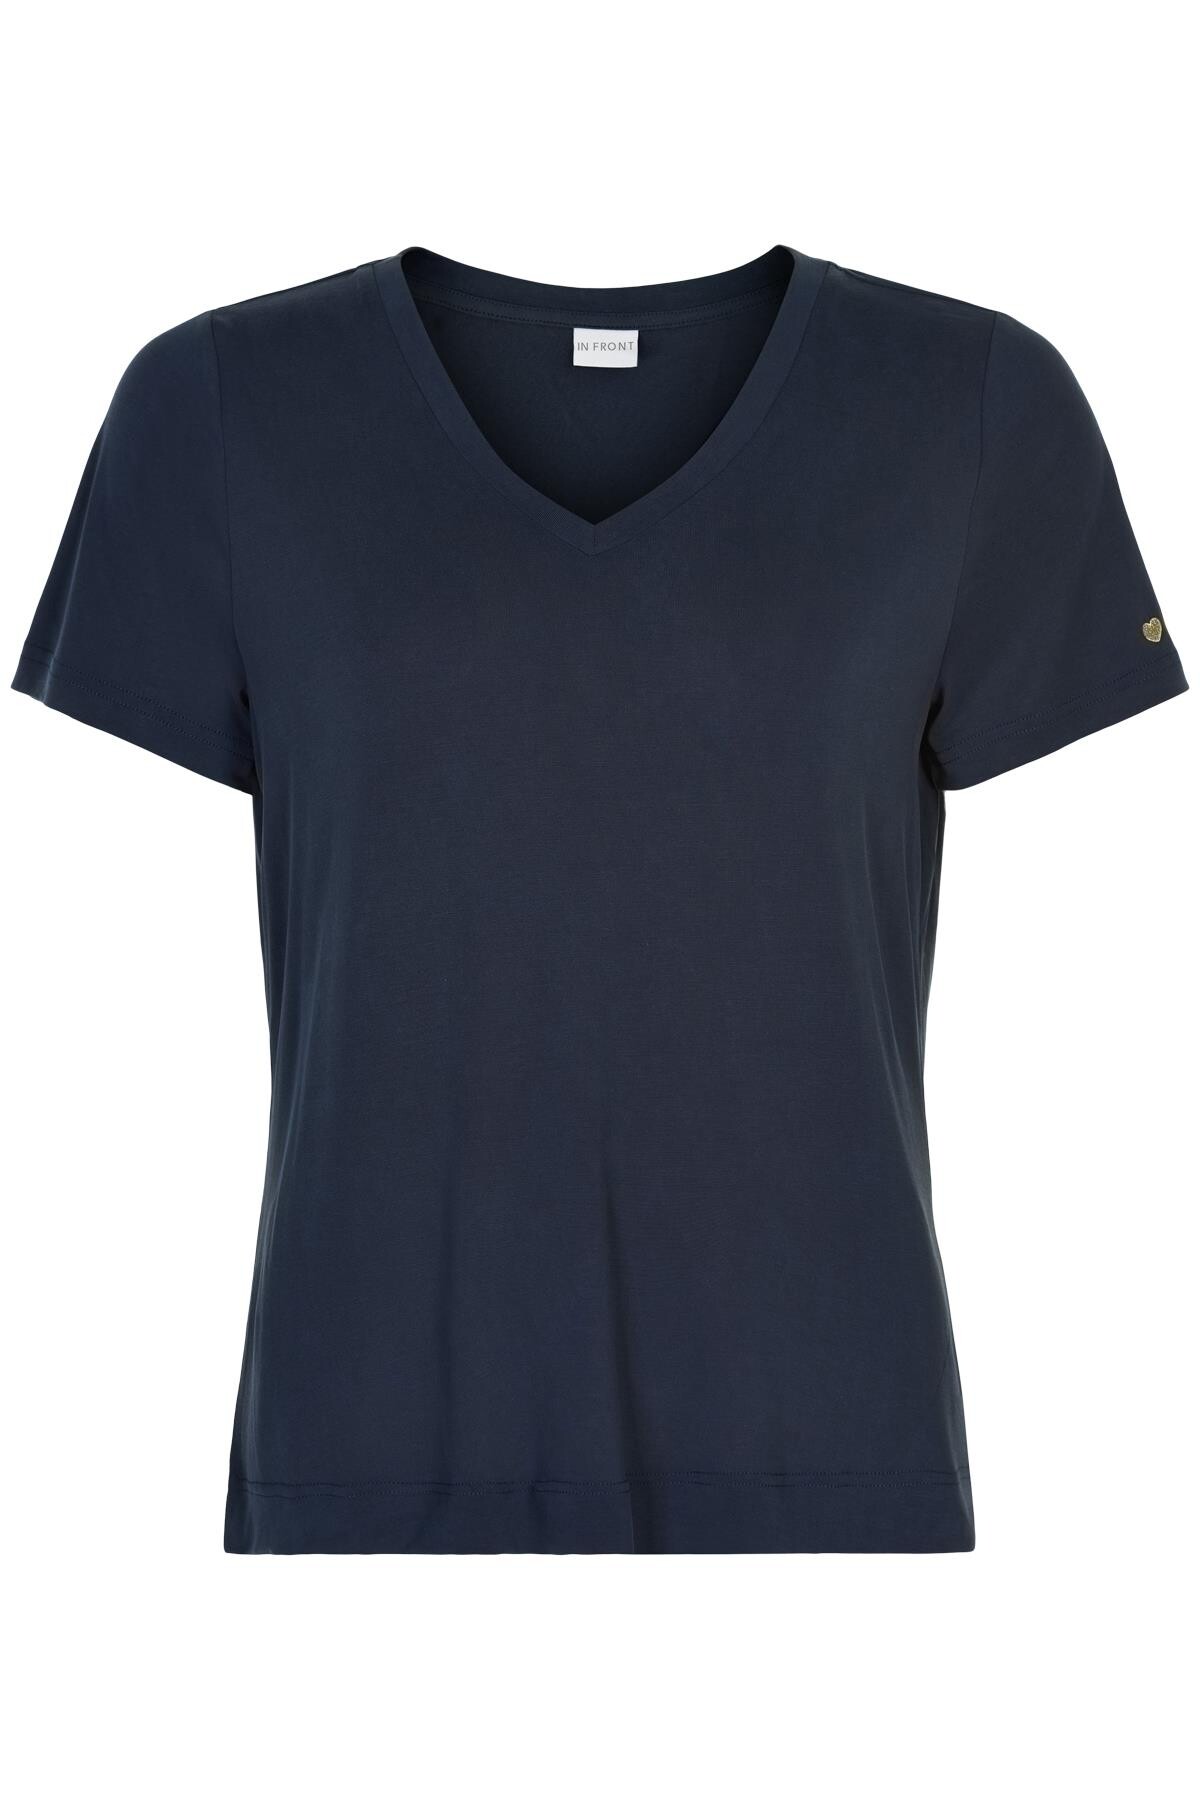 #3 - In Front Nina V-neck T-shirt, Farve: Blå, Størrelse: XL, Dame